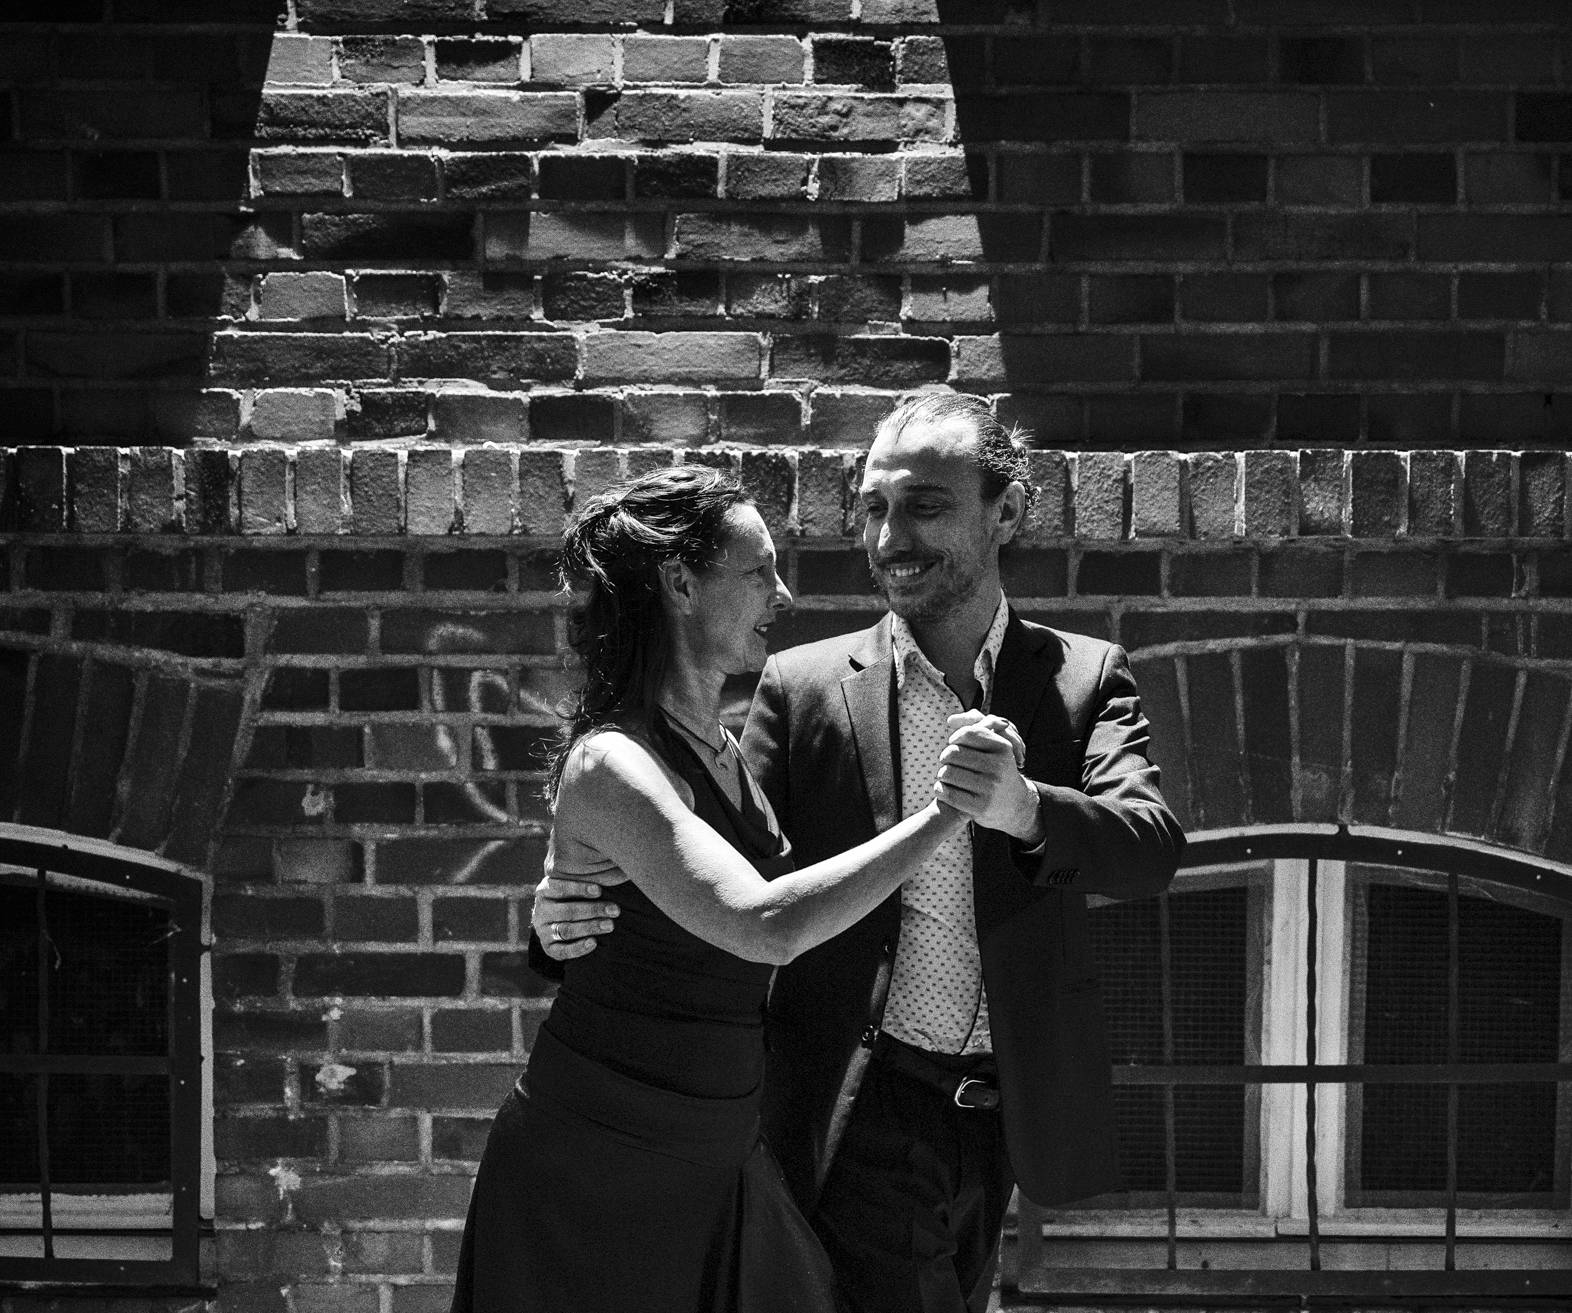  Der argentinische Tango-Tanzlehrer Cesar Spengler und seine Schülerin Eva Cukoic. 